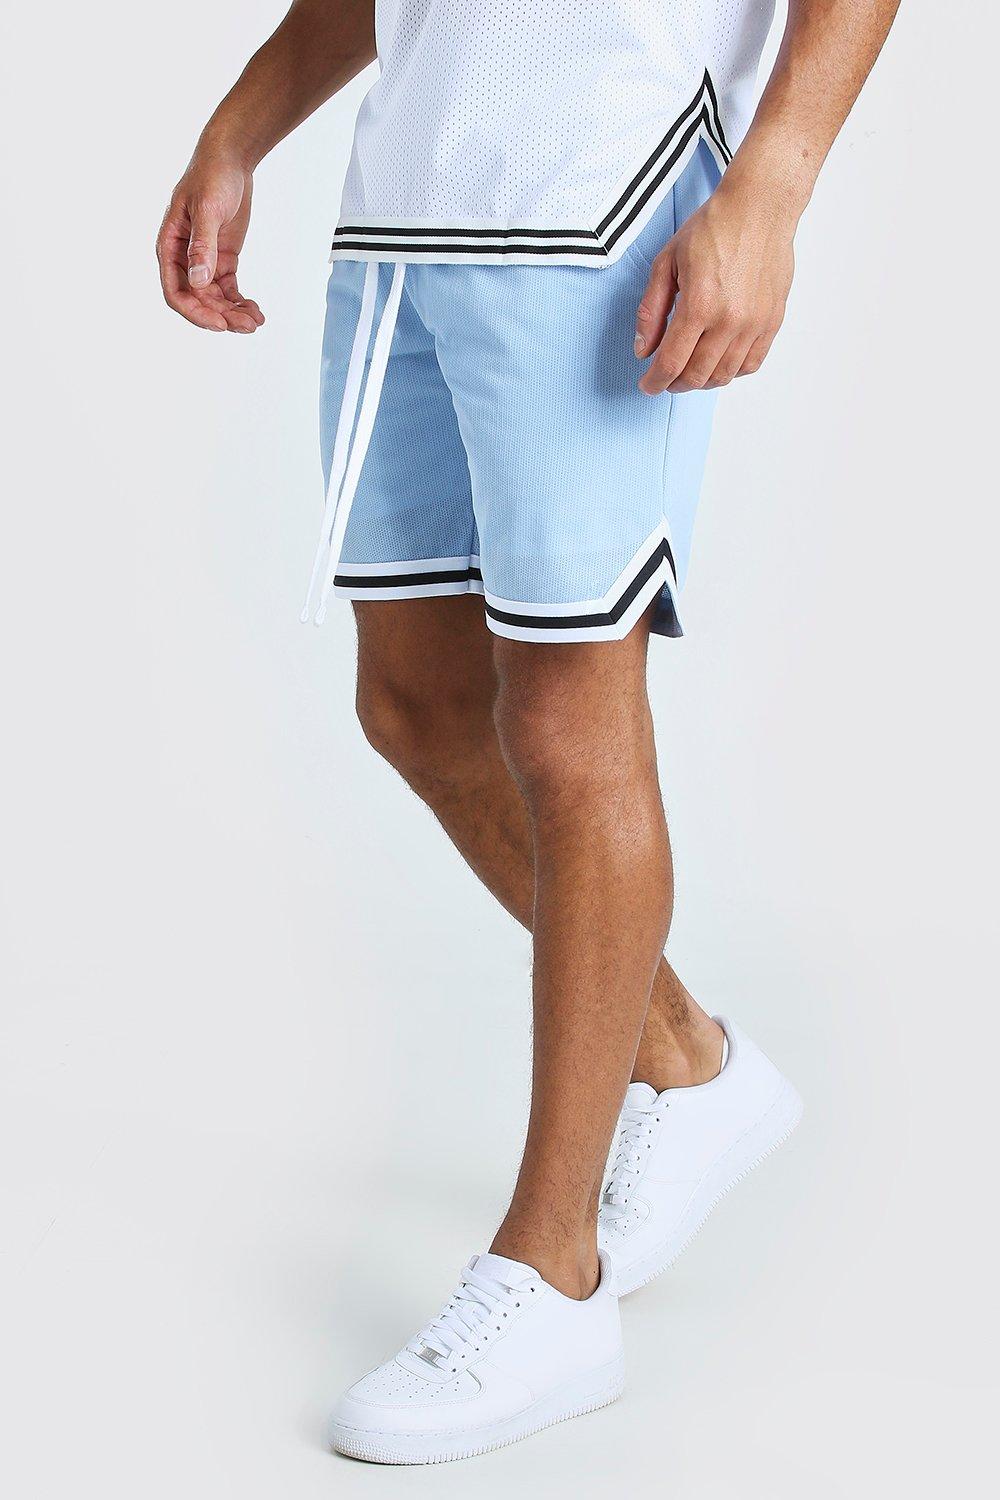 blauwe mesh kort Kleding Gender-neutrale kleding volwassenen Shorts mint kort witte short bruine mesh kort Kleurrijke Mesh Basketbal Shorts 